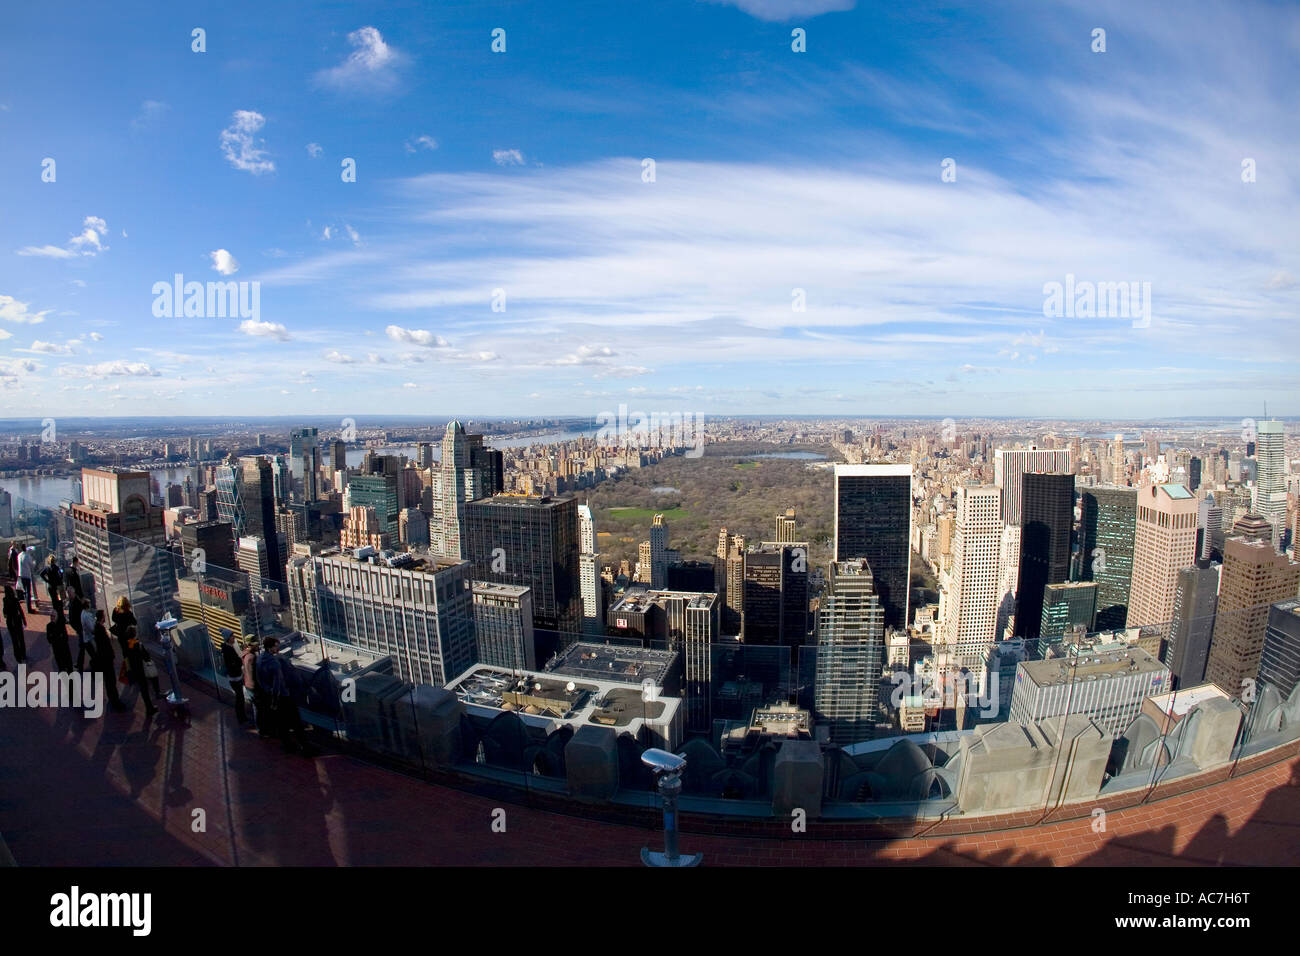 Zeigen Sie nördlich von der Spitze des Zentrums Rockefeller Center Gebäude oben auf den Felsen in Richtung Central Park und uptown Manhattan NY an Stockfoto